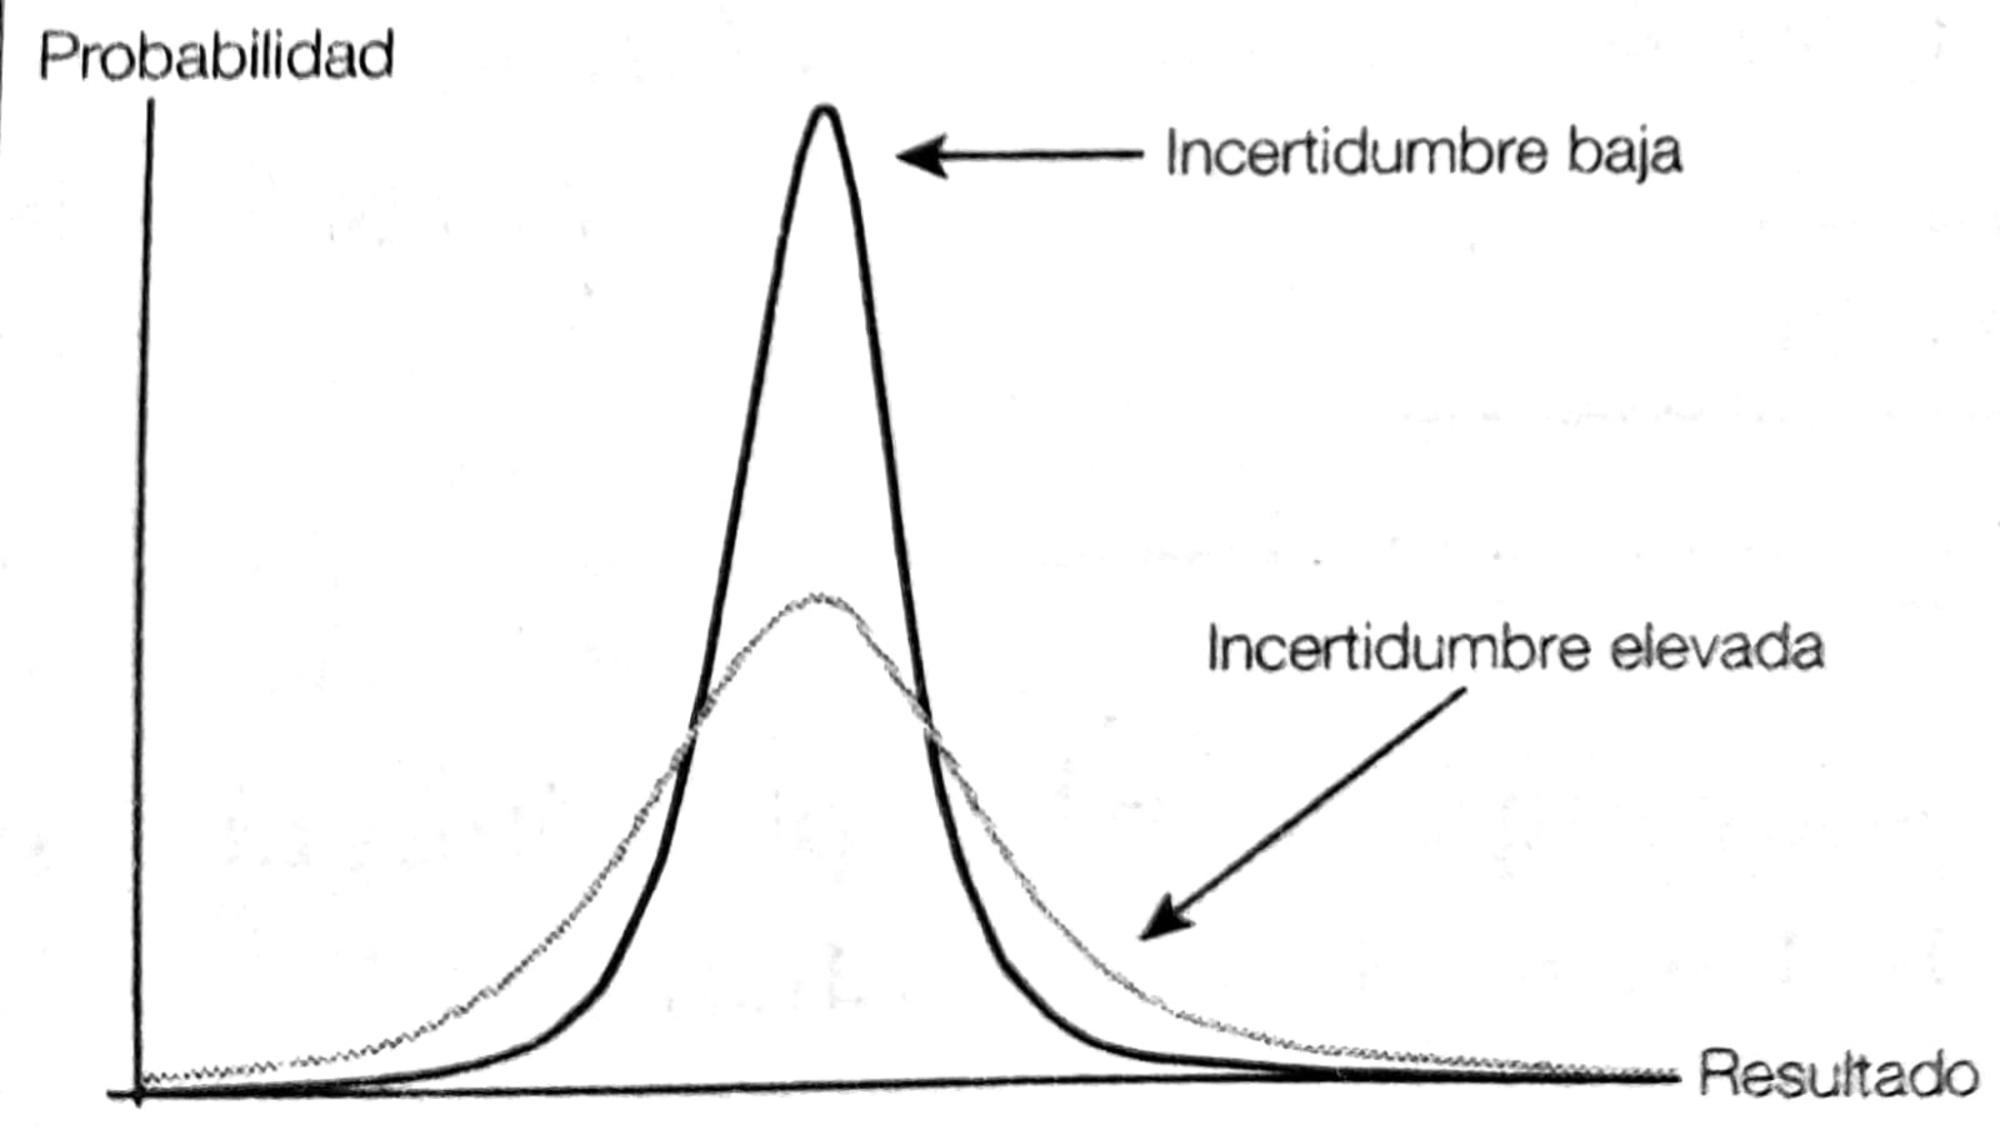 Figura 1: Al aumentar la variabilidad, los resultados extremos son más frecuentes, como indica que el área debajo de la curva crece. Tomada de “Antifrágil”.